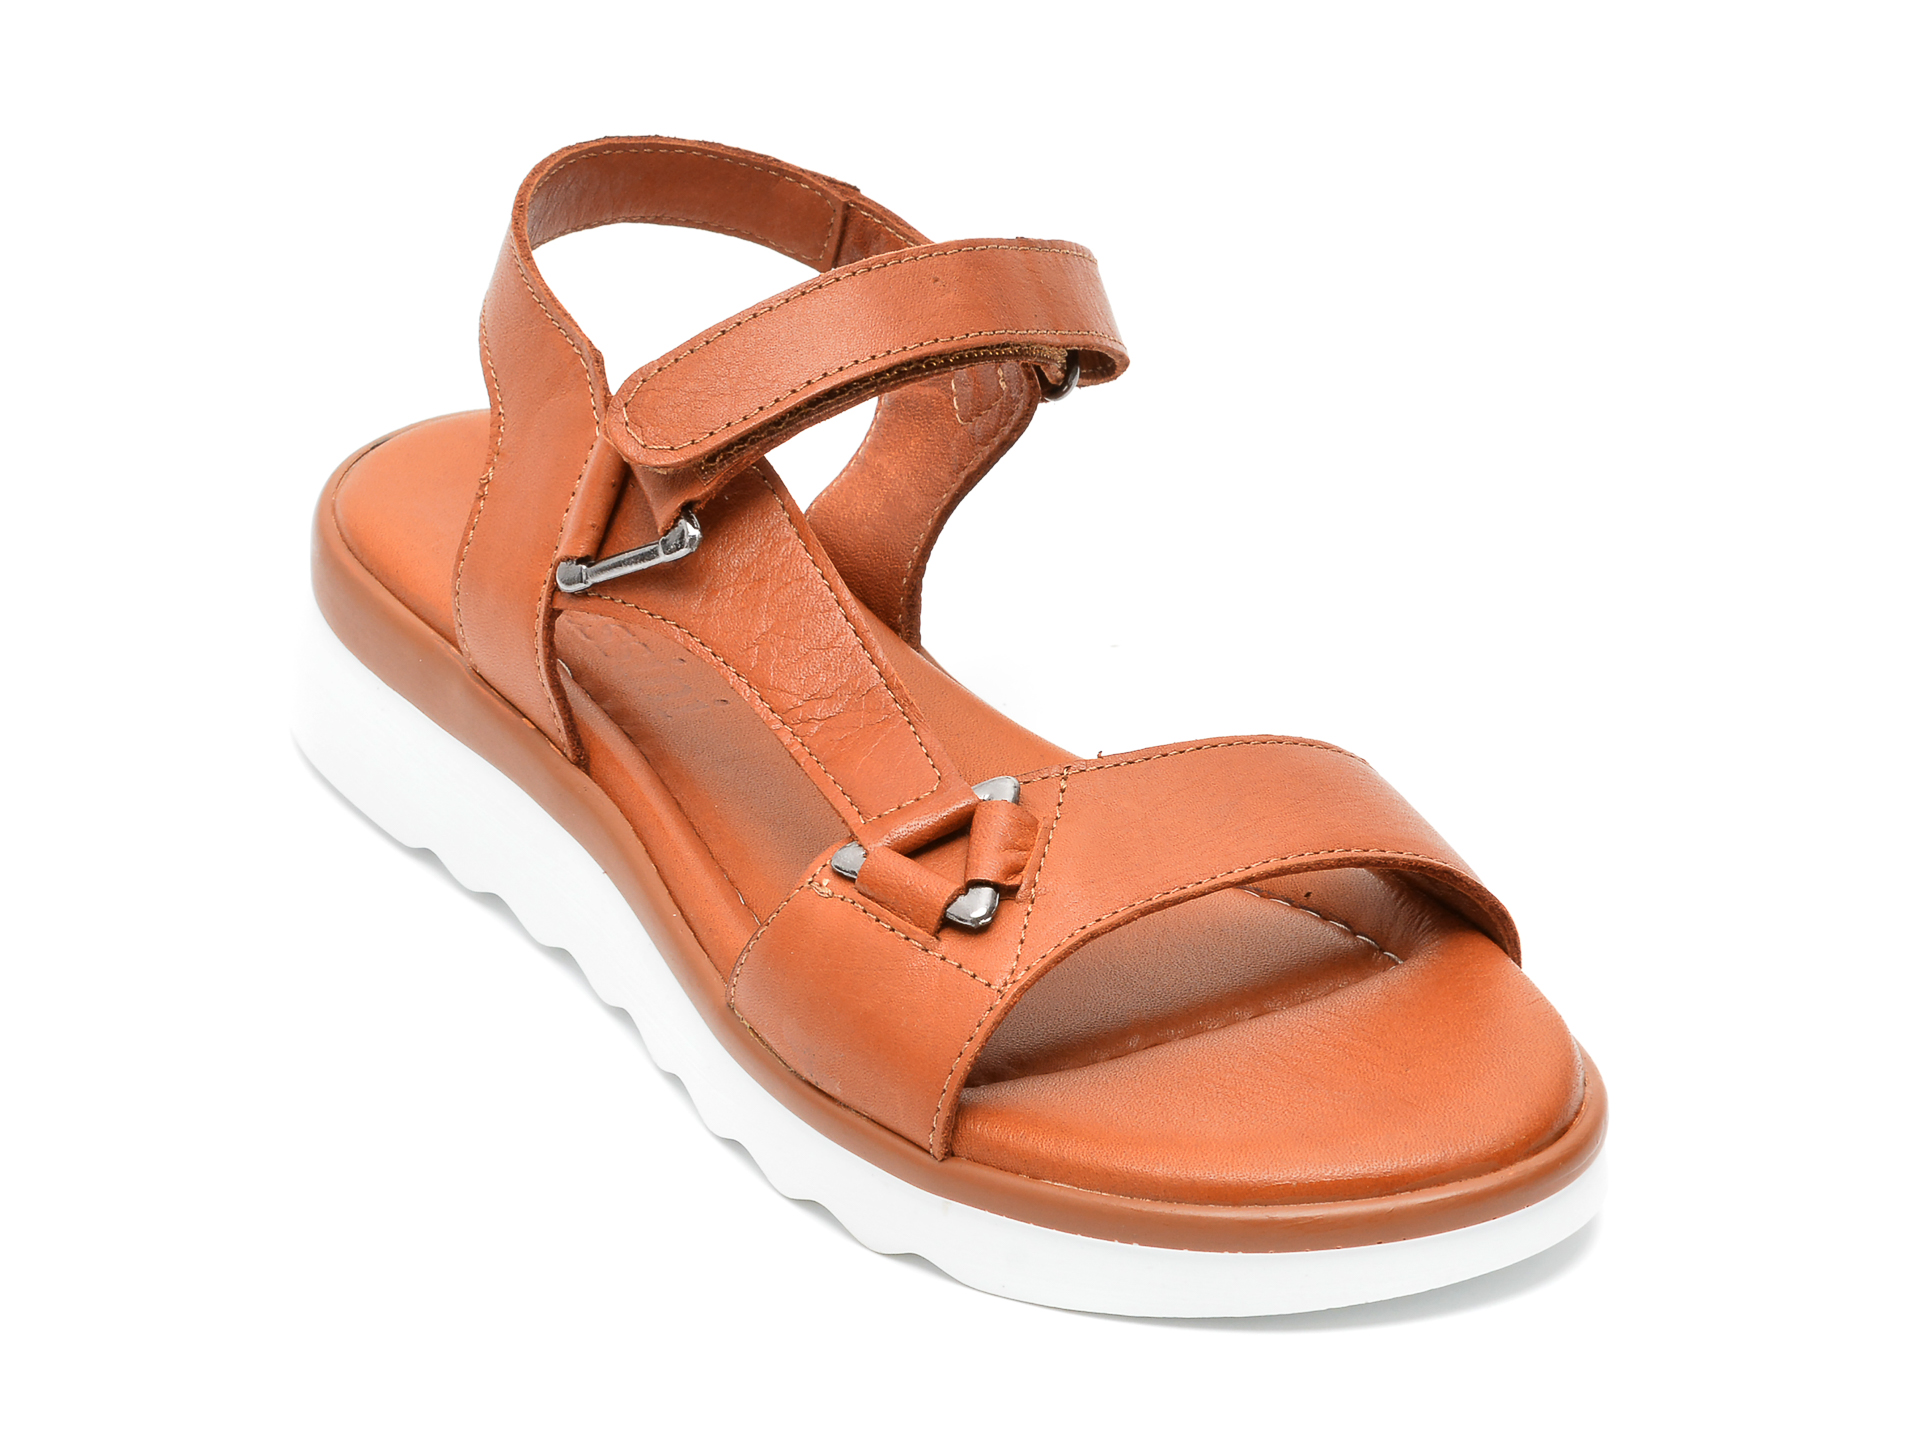 Sandale FLAVIA PASSINI maro, 4515, din piele naturala /femei/sandale INCALTAMINTE